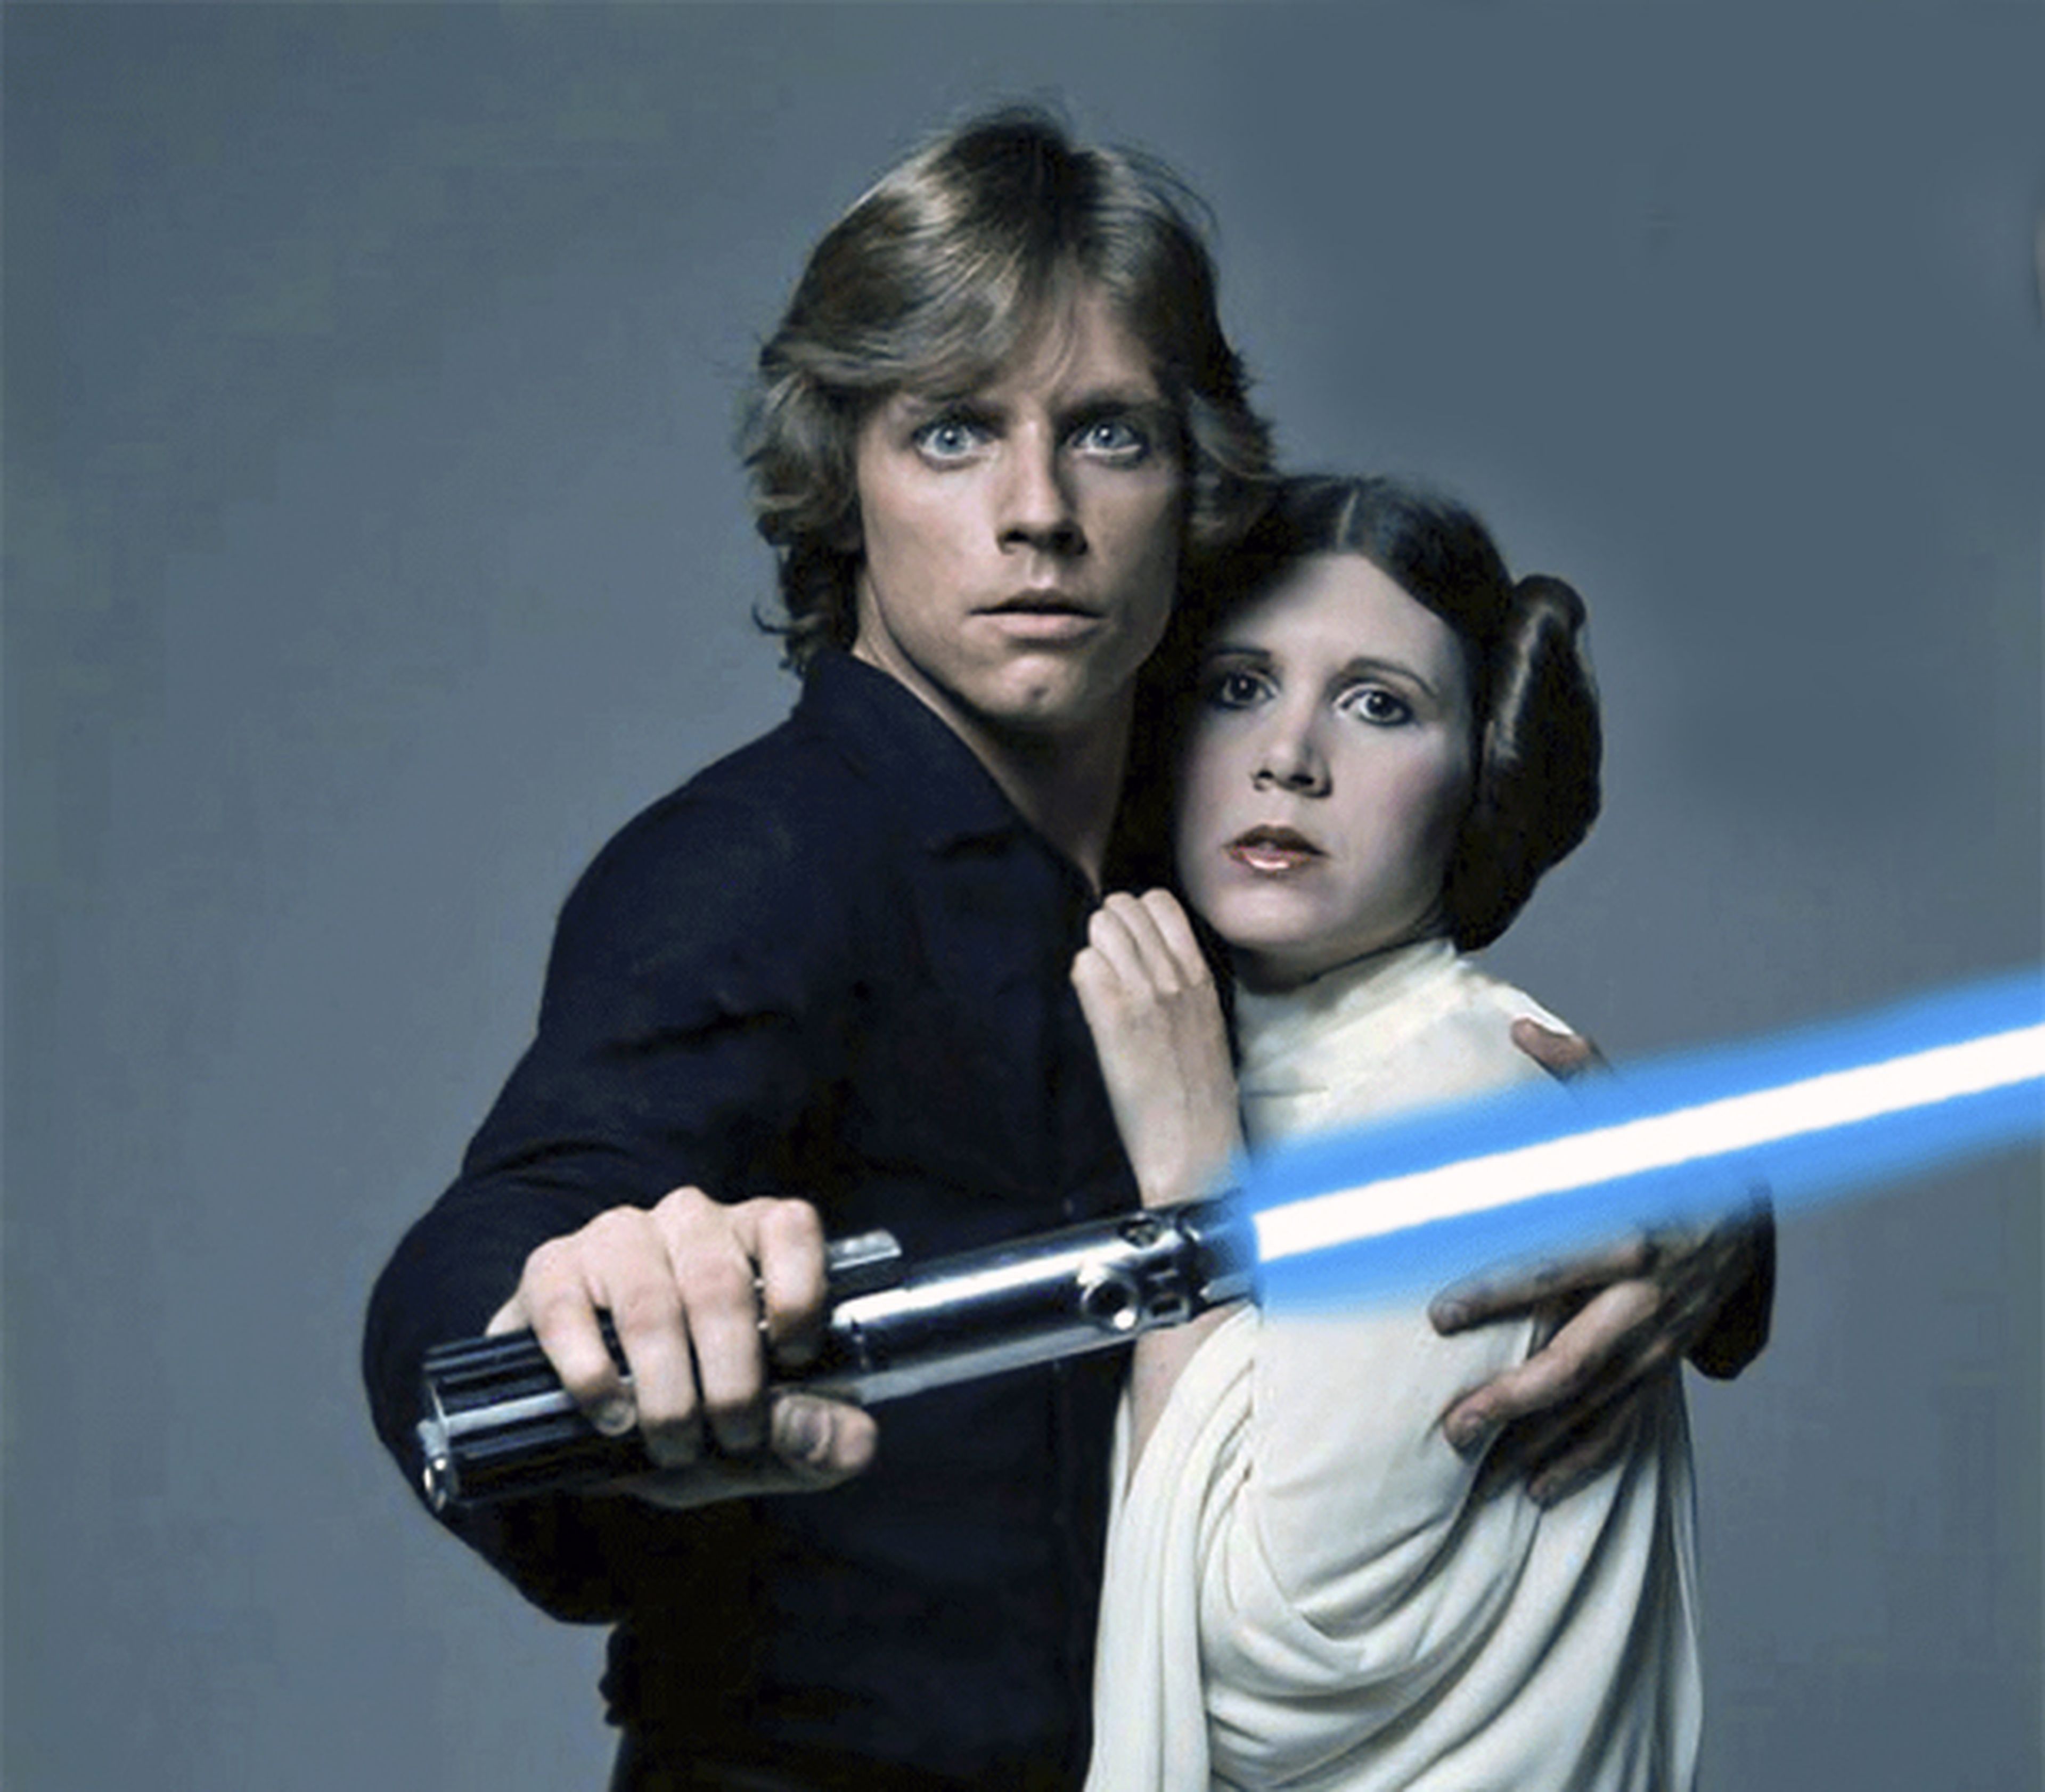 Star Wars Episodios VIII y IX: Luke y Leia serán claves, según el Sony Hack